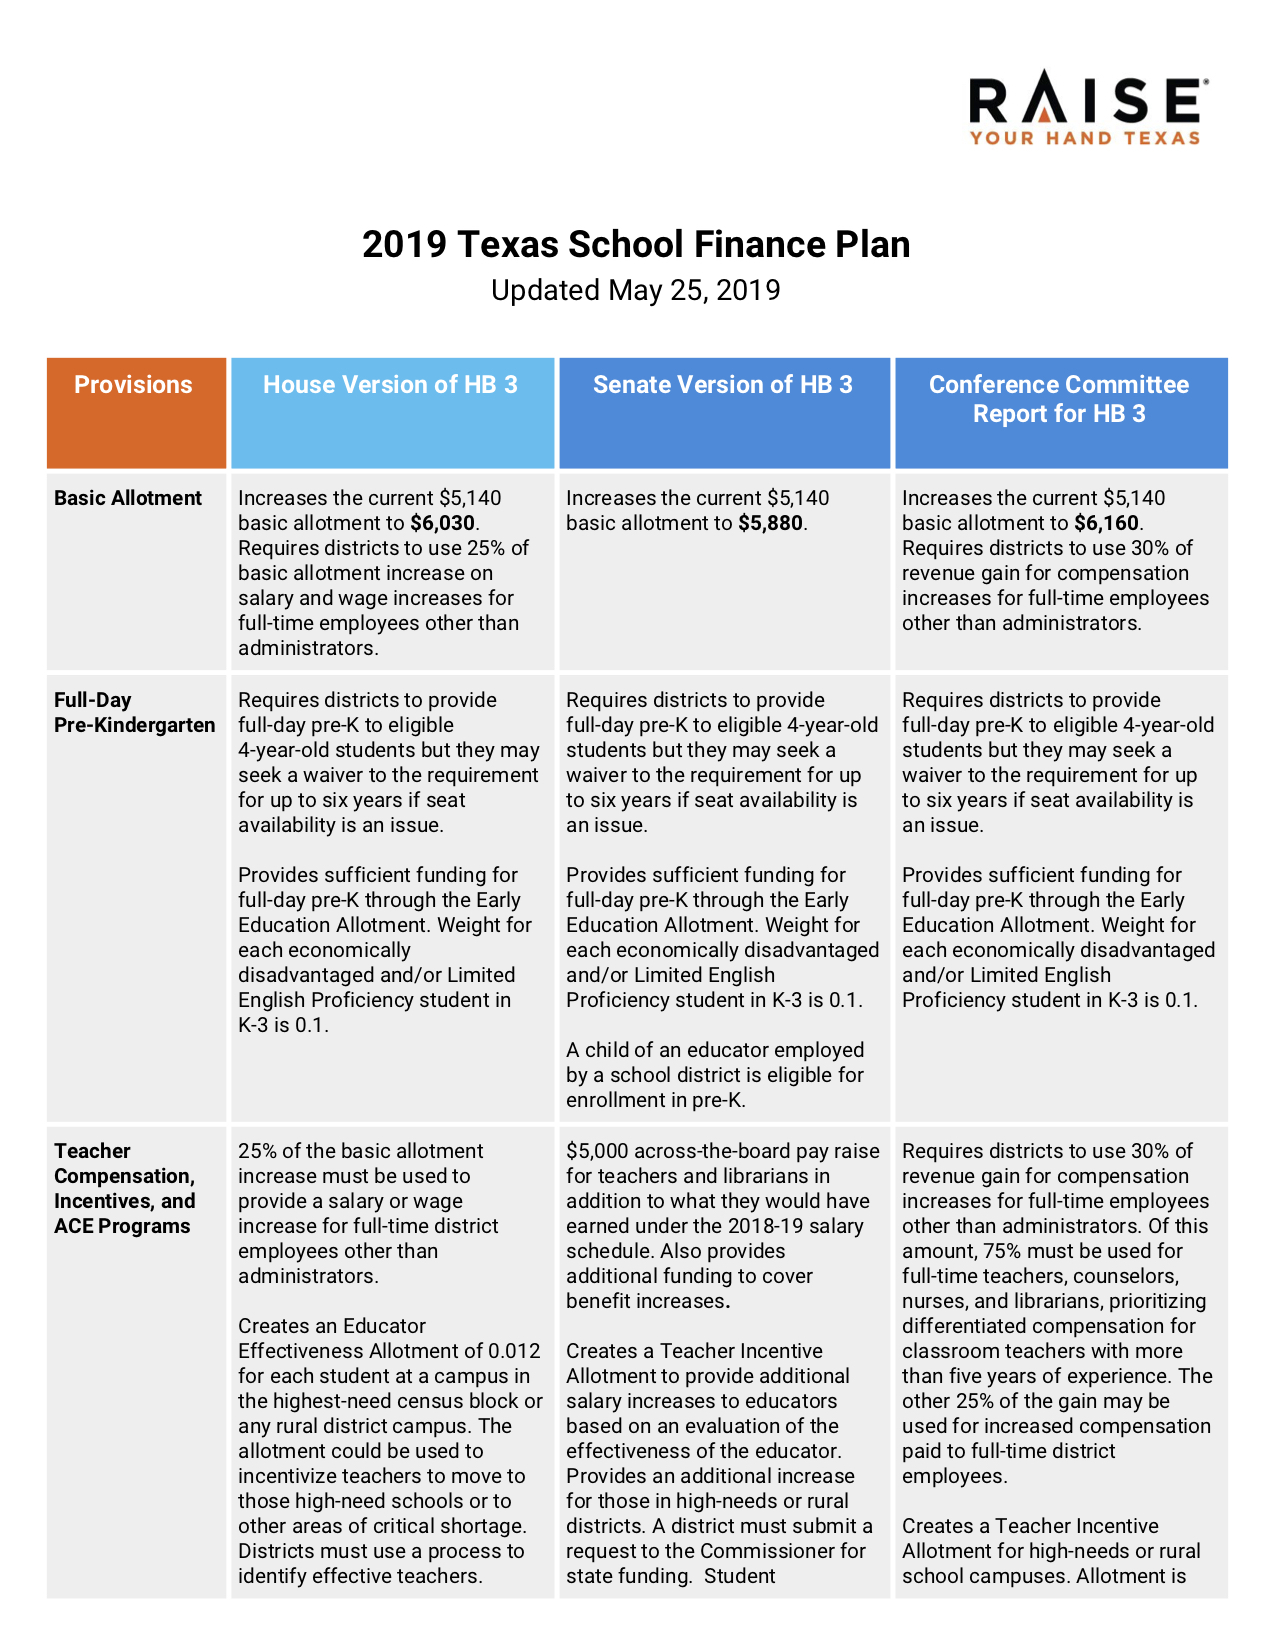 school-finance-plan